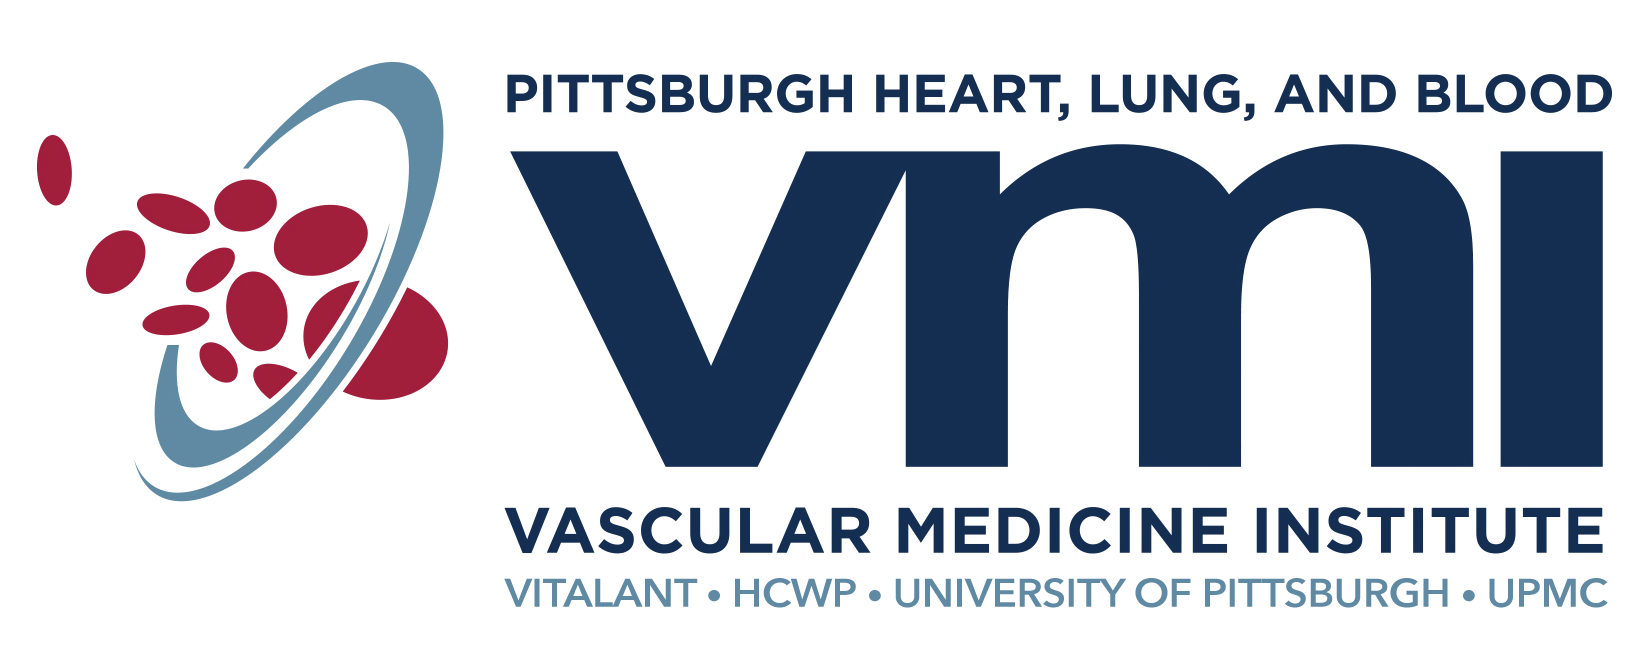 Vascular Medicine Institute